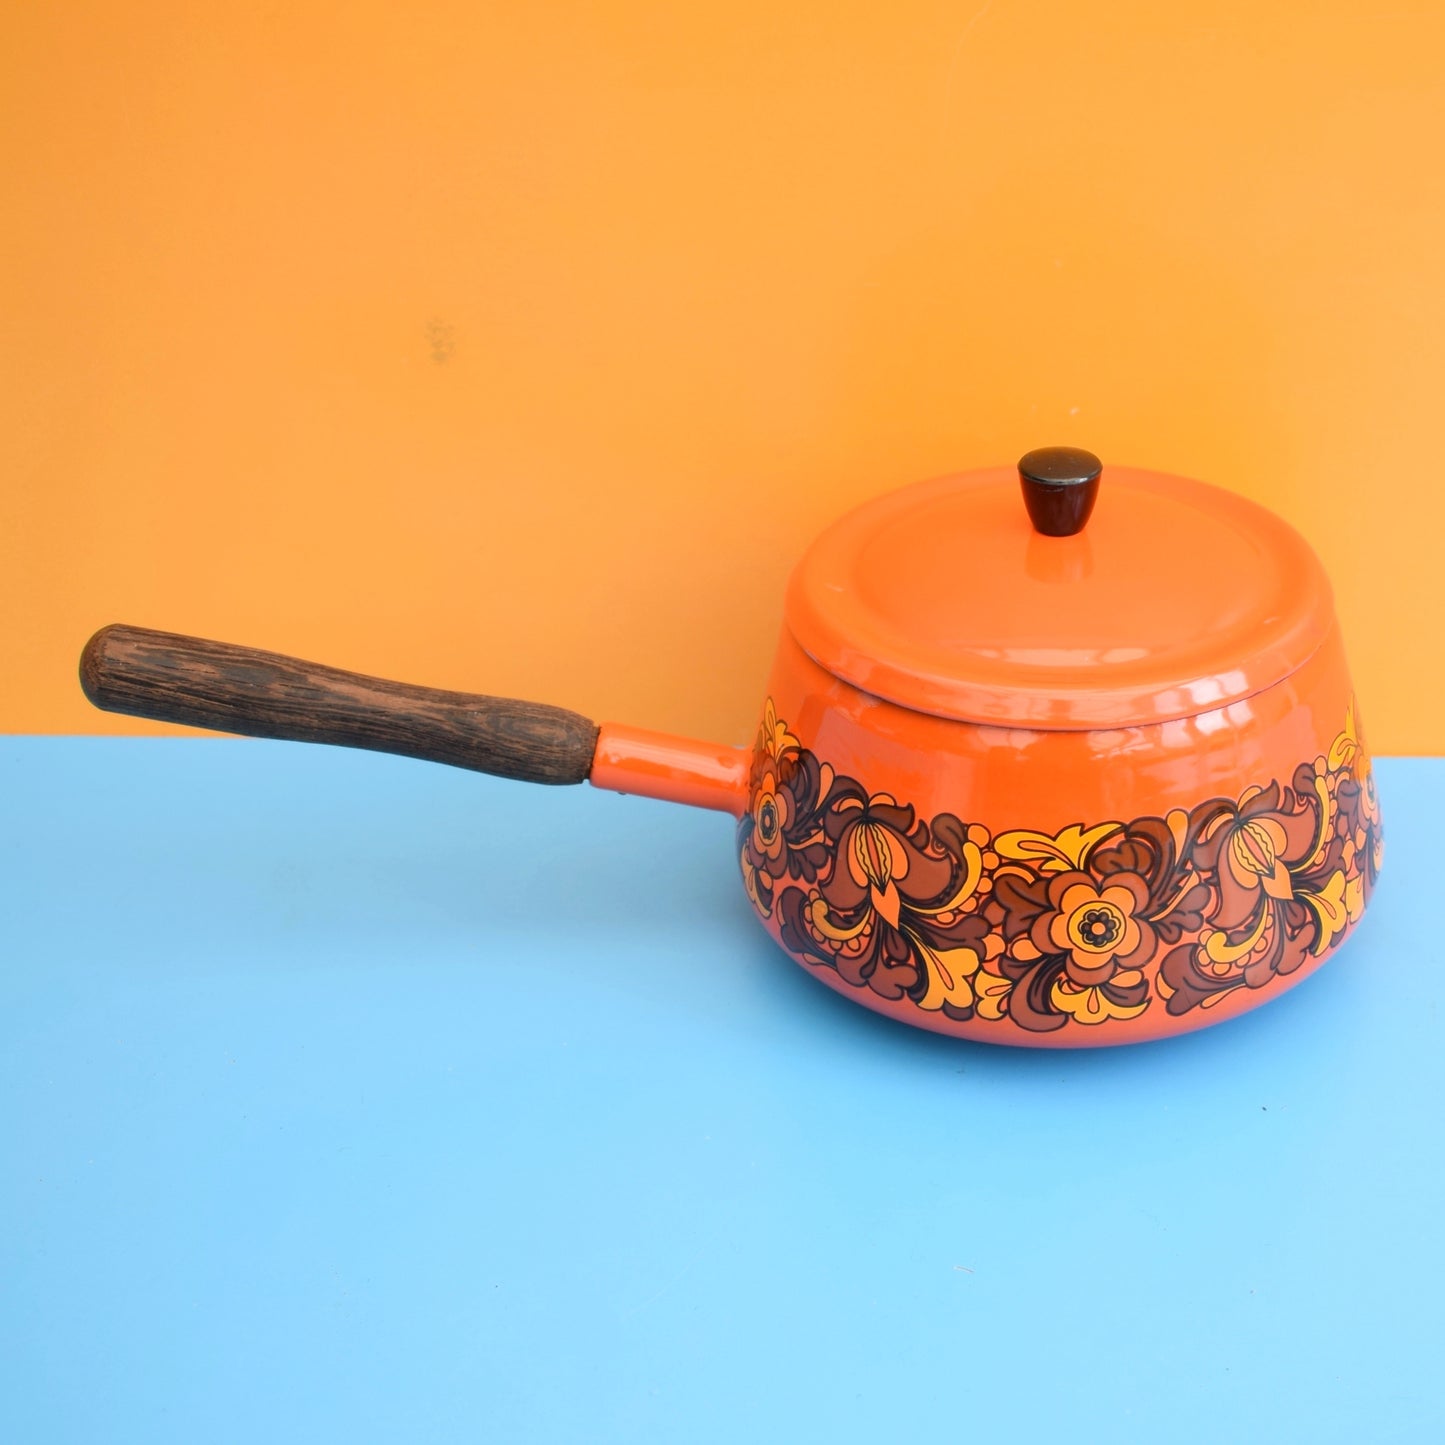 Vintage 1970s Enamel Fondue Pan / Saucepan - Orange